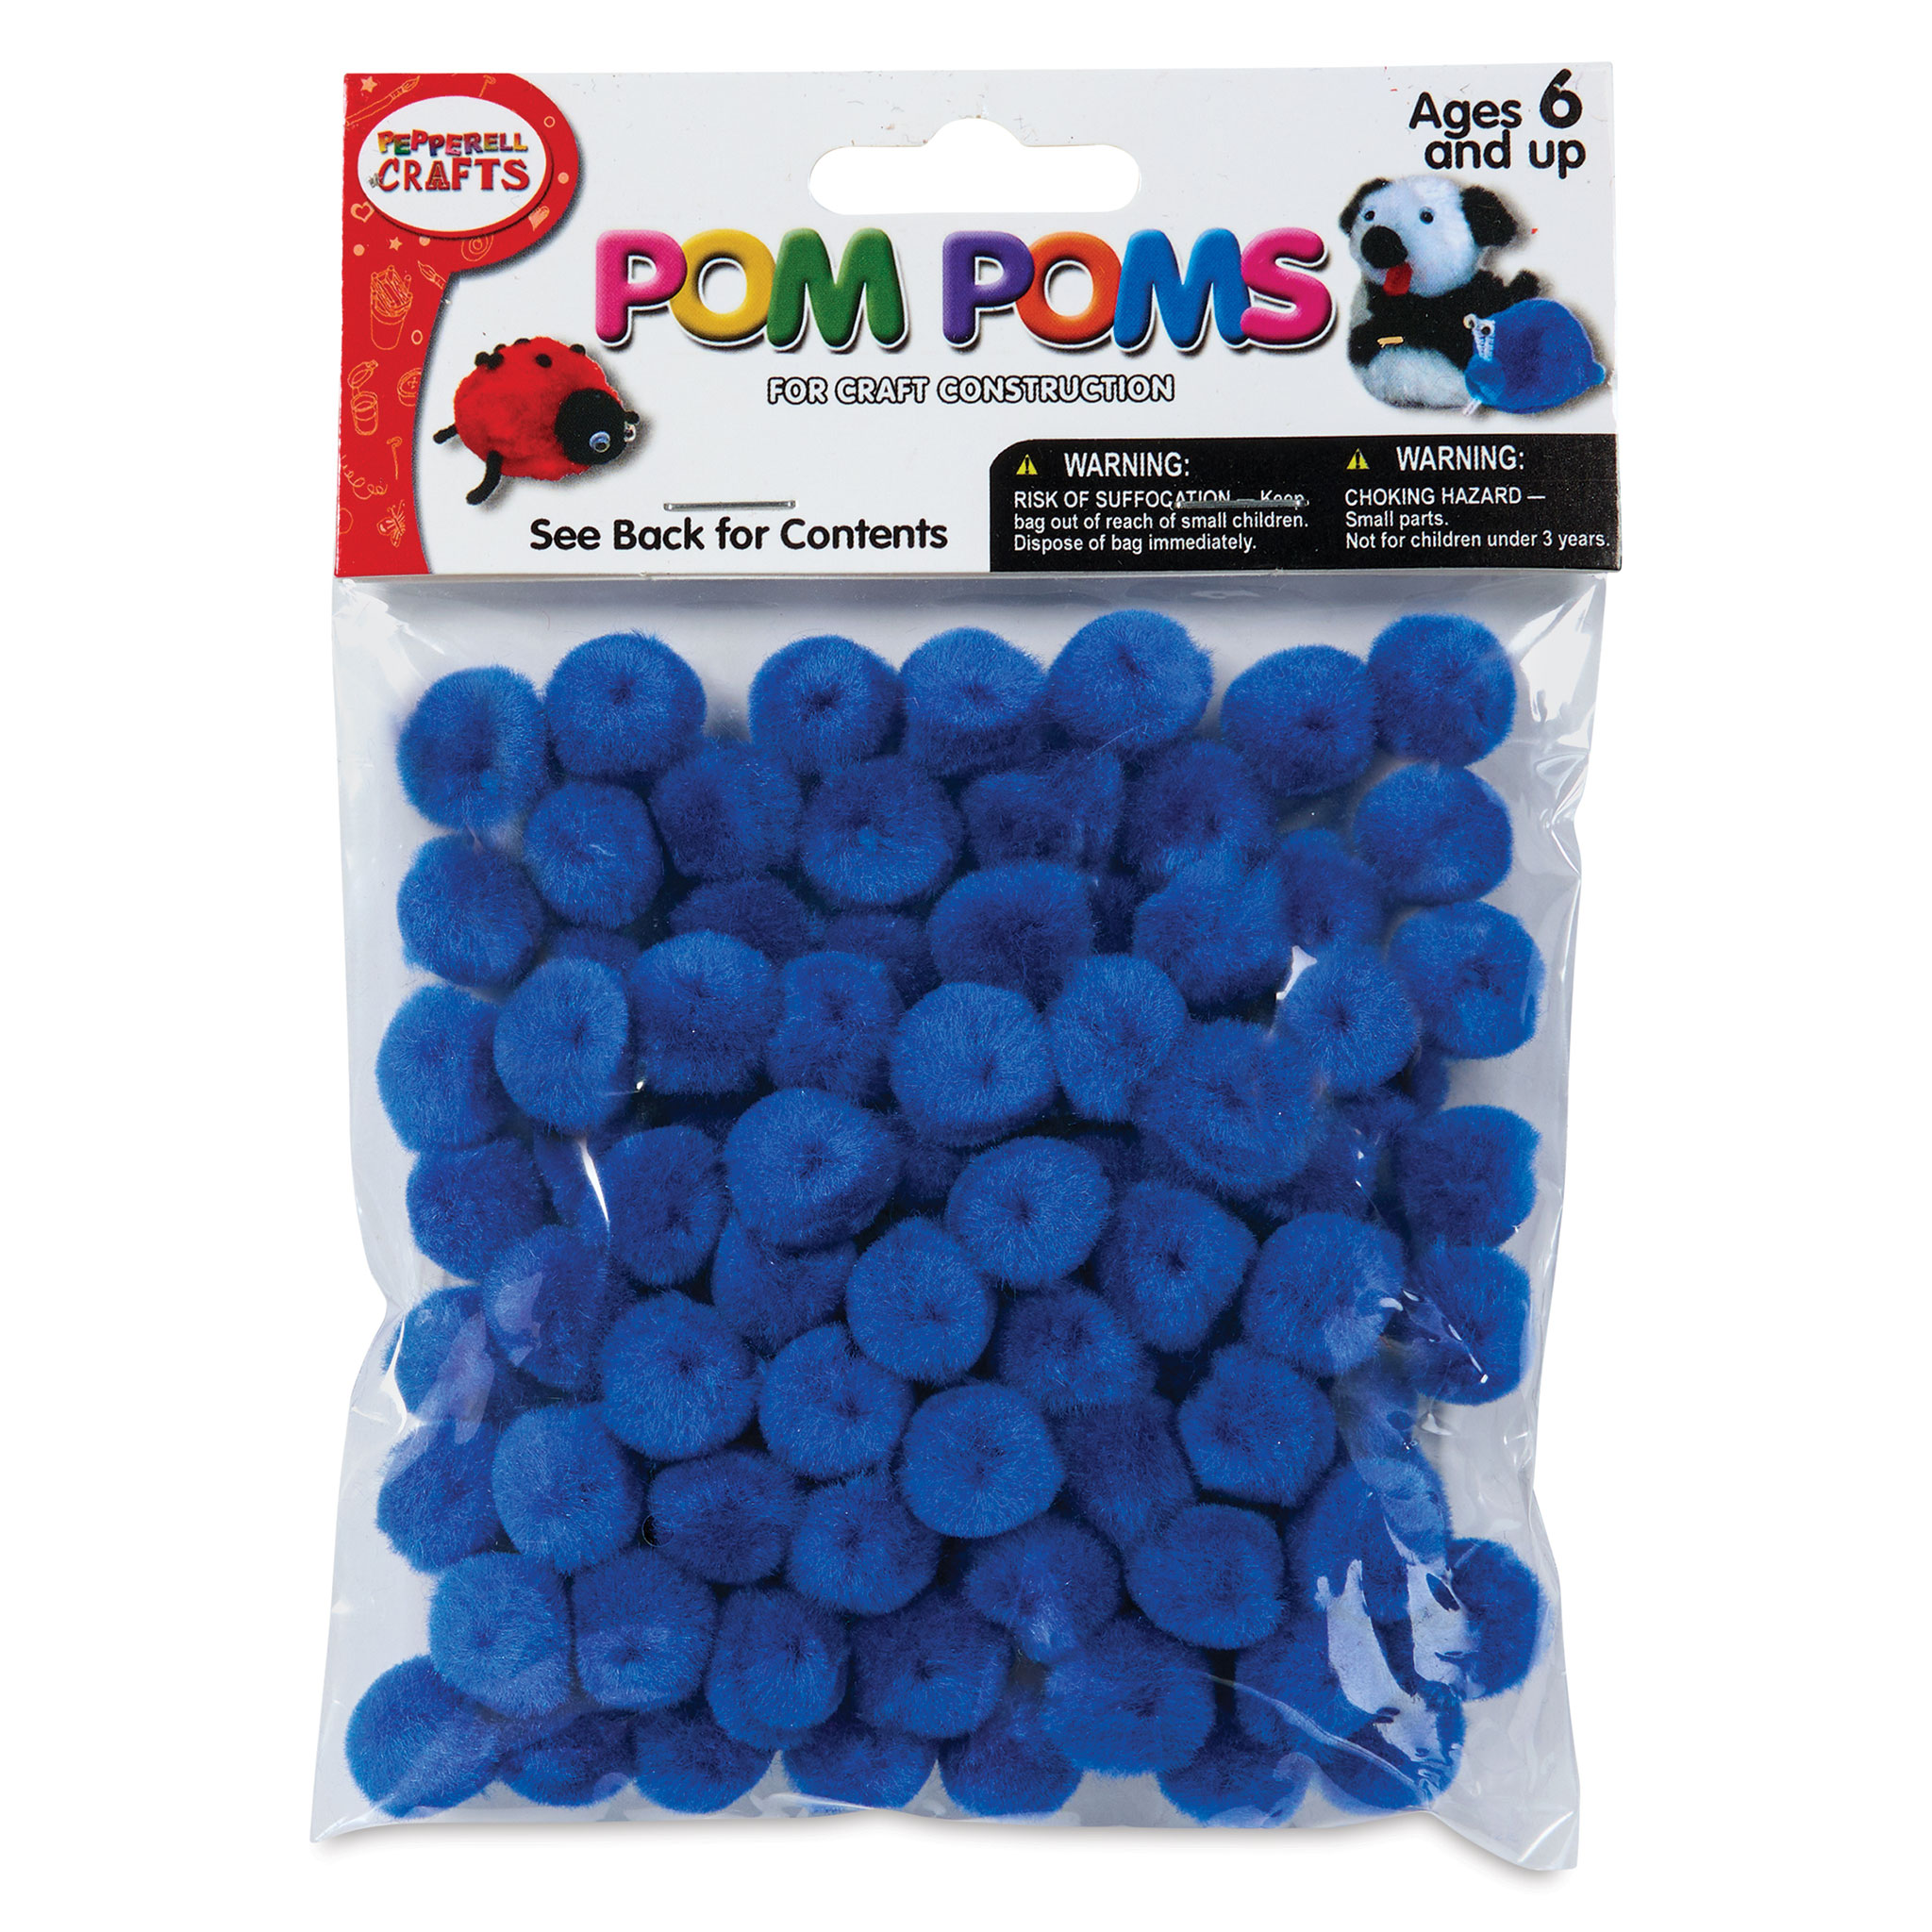 Pepperell Craft Pom Poms